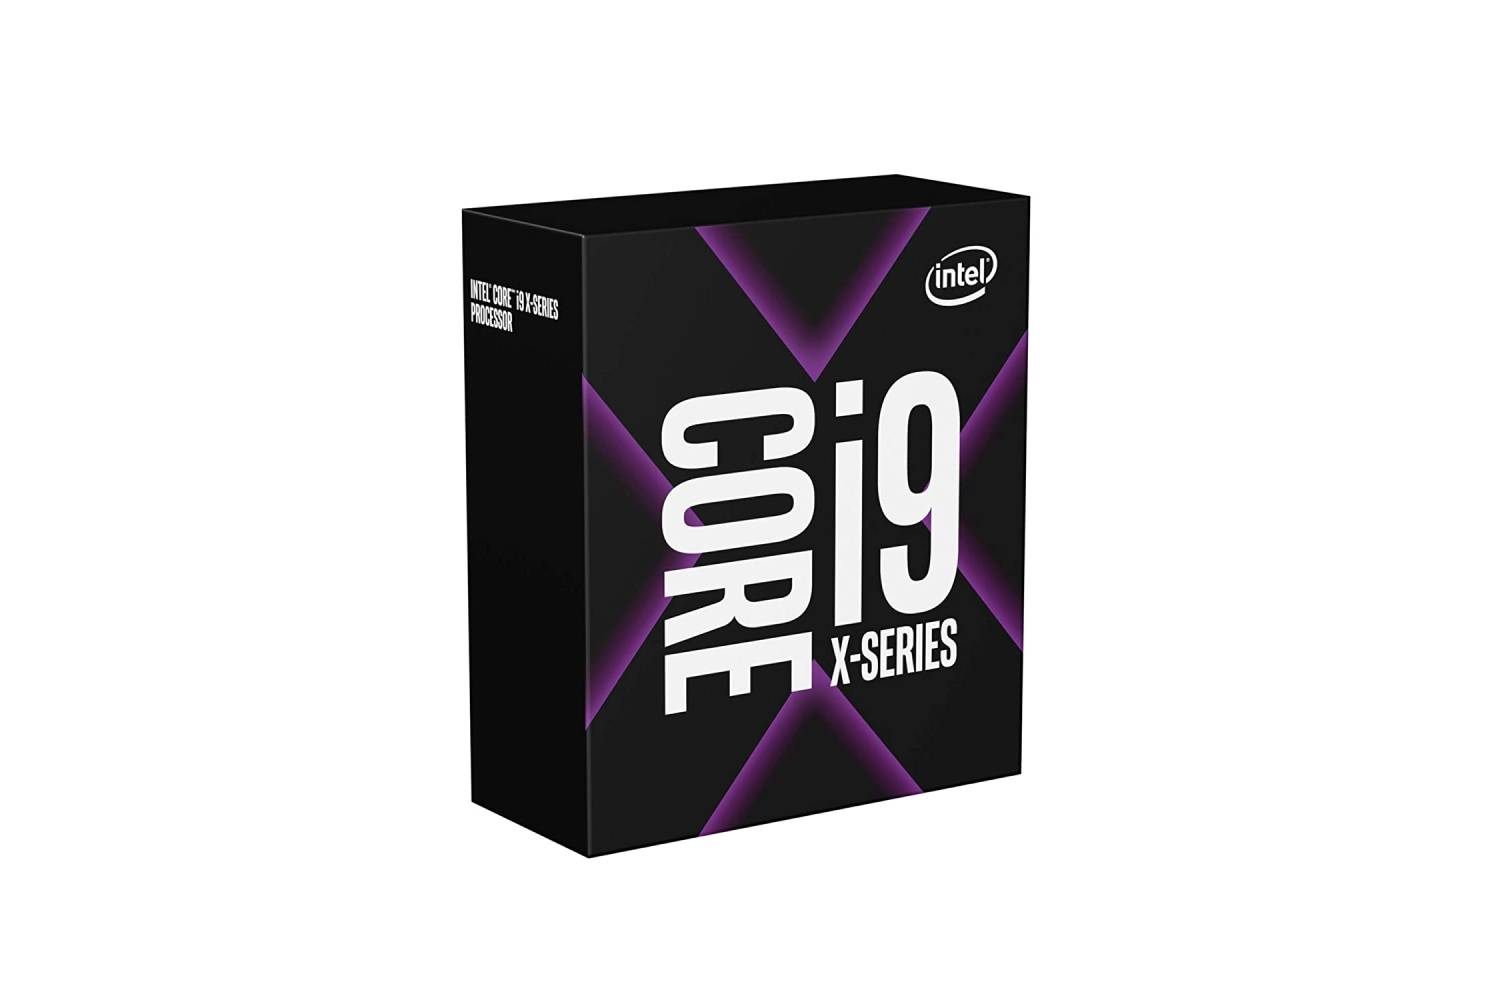 Intel Core i9-10940X X-Series Processor